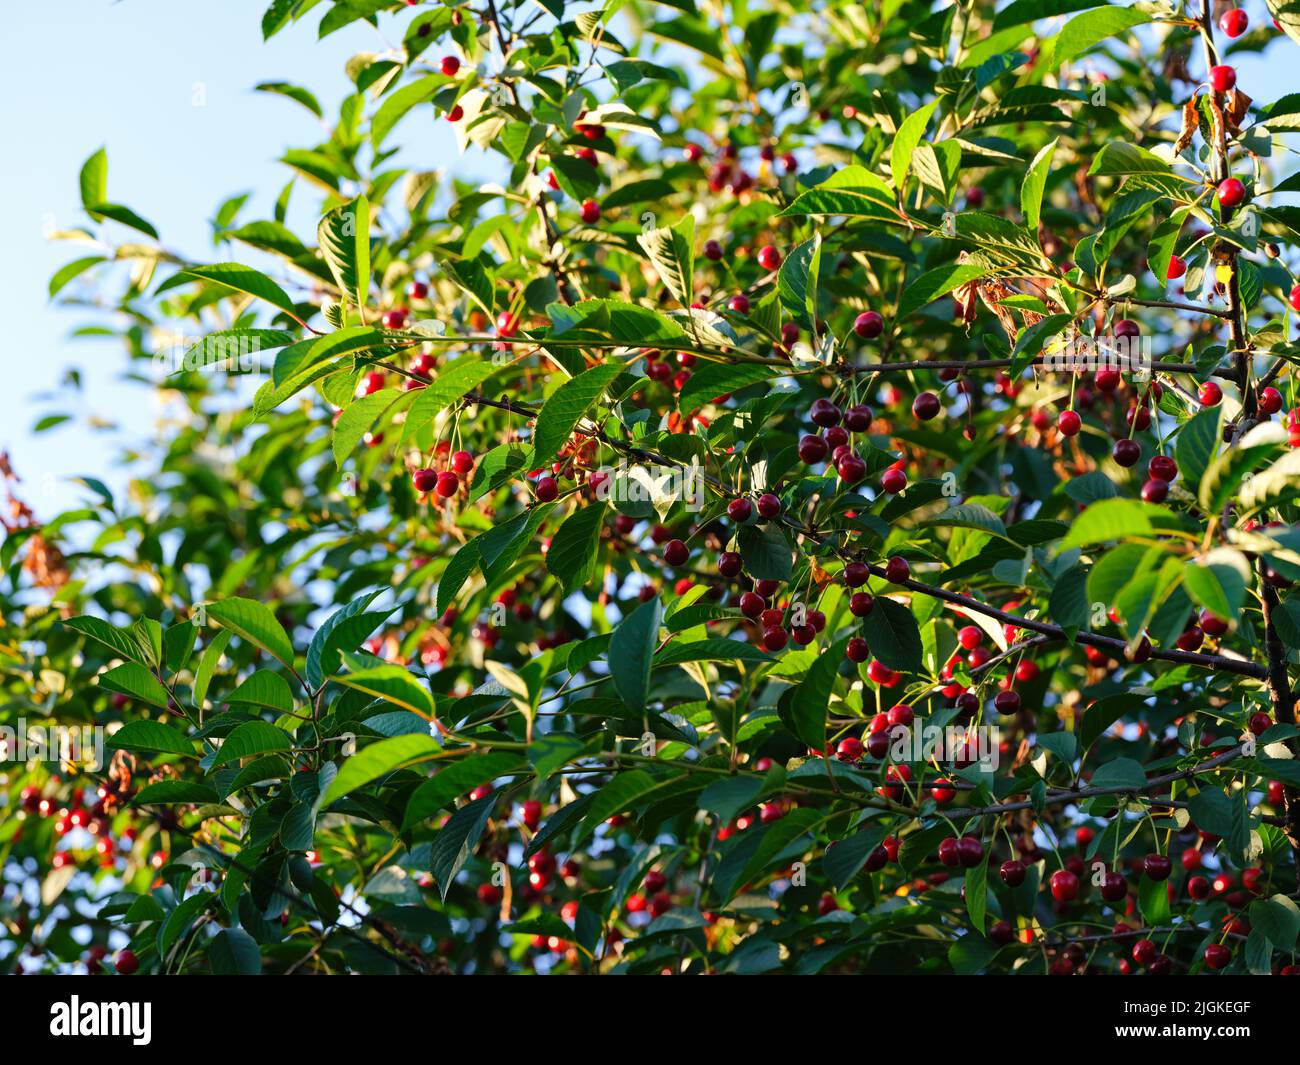 Un árbol Сherry con cerezas maduras sobre él. Foto de stock